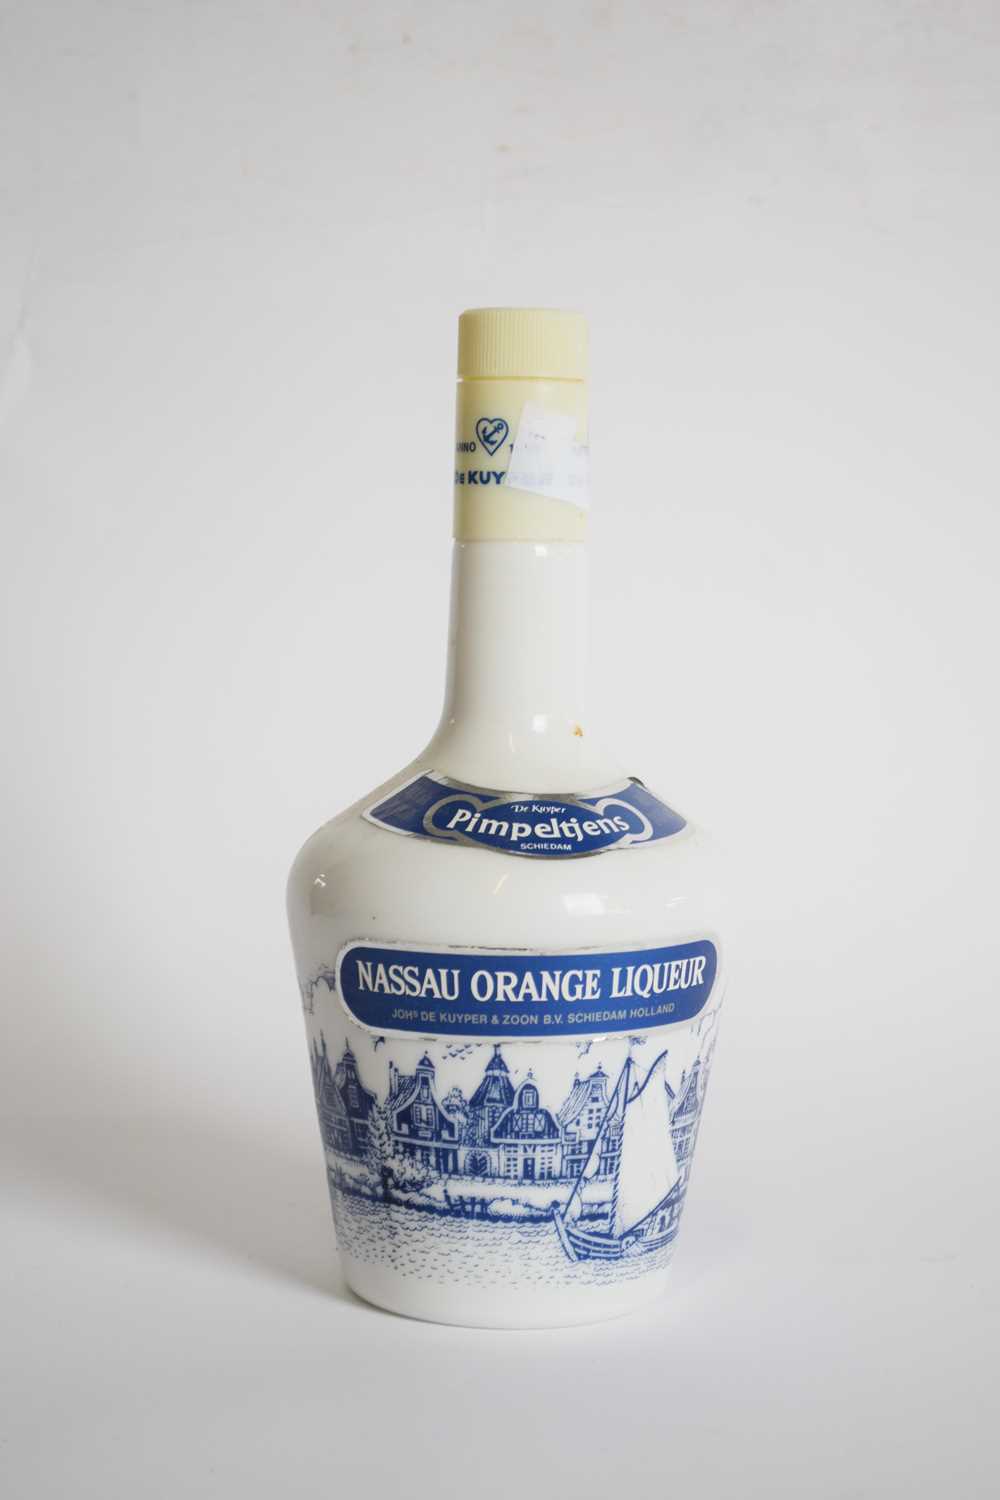 De Kuyper Nassau Orange, 24 fl oz, 70% proof, 1 bottle - Image 2 of 2